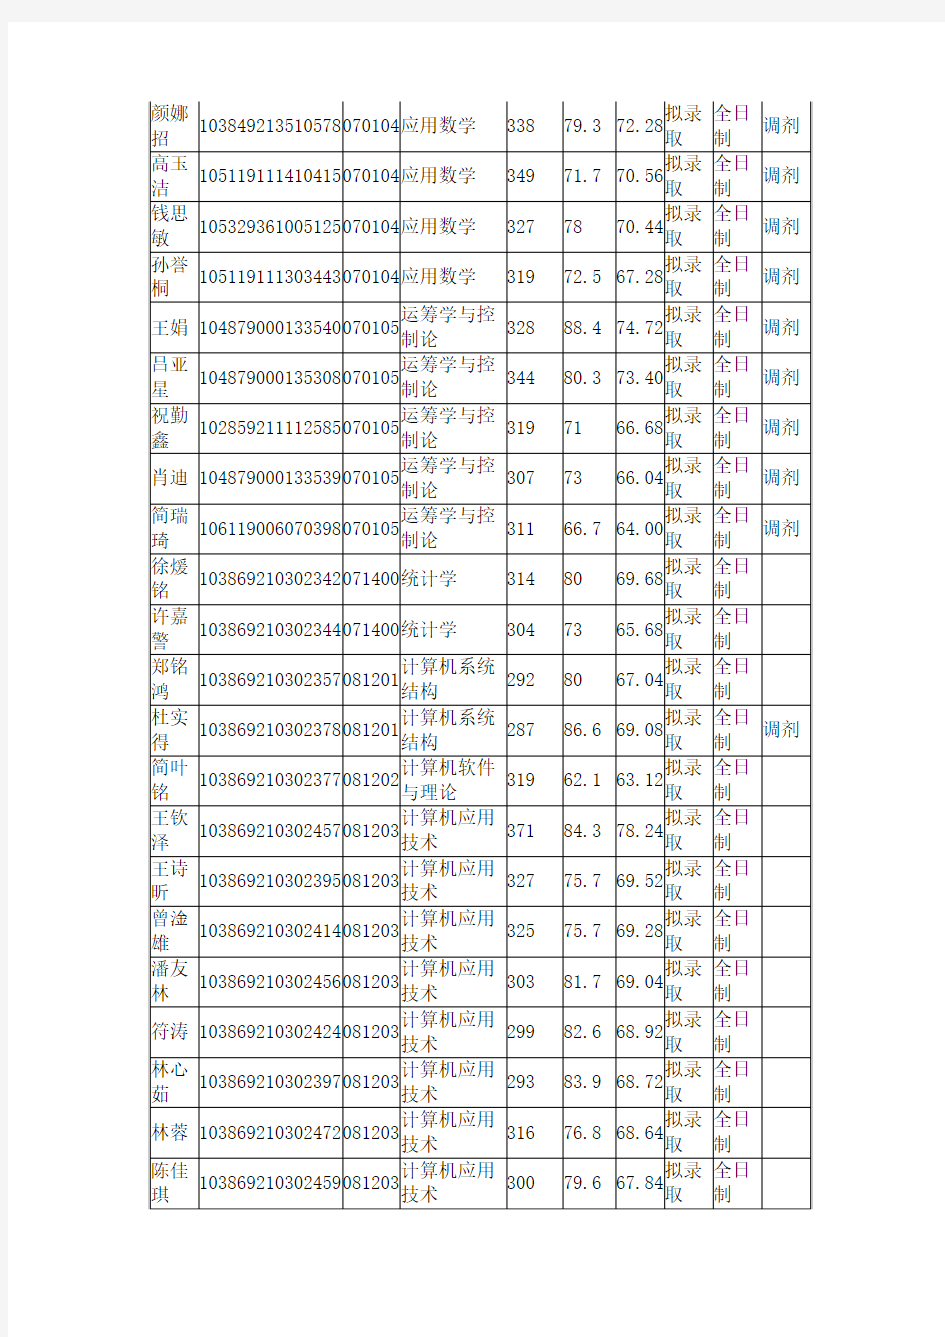 2019年福州大学数学与计算机科学学院学术型硕士研究生复试考生情况表(学术型)